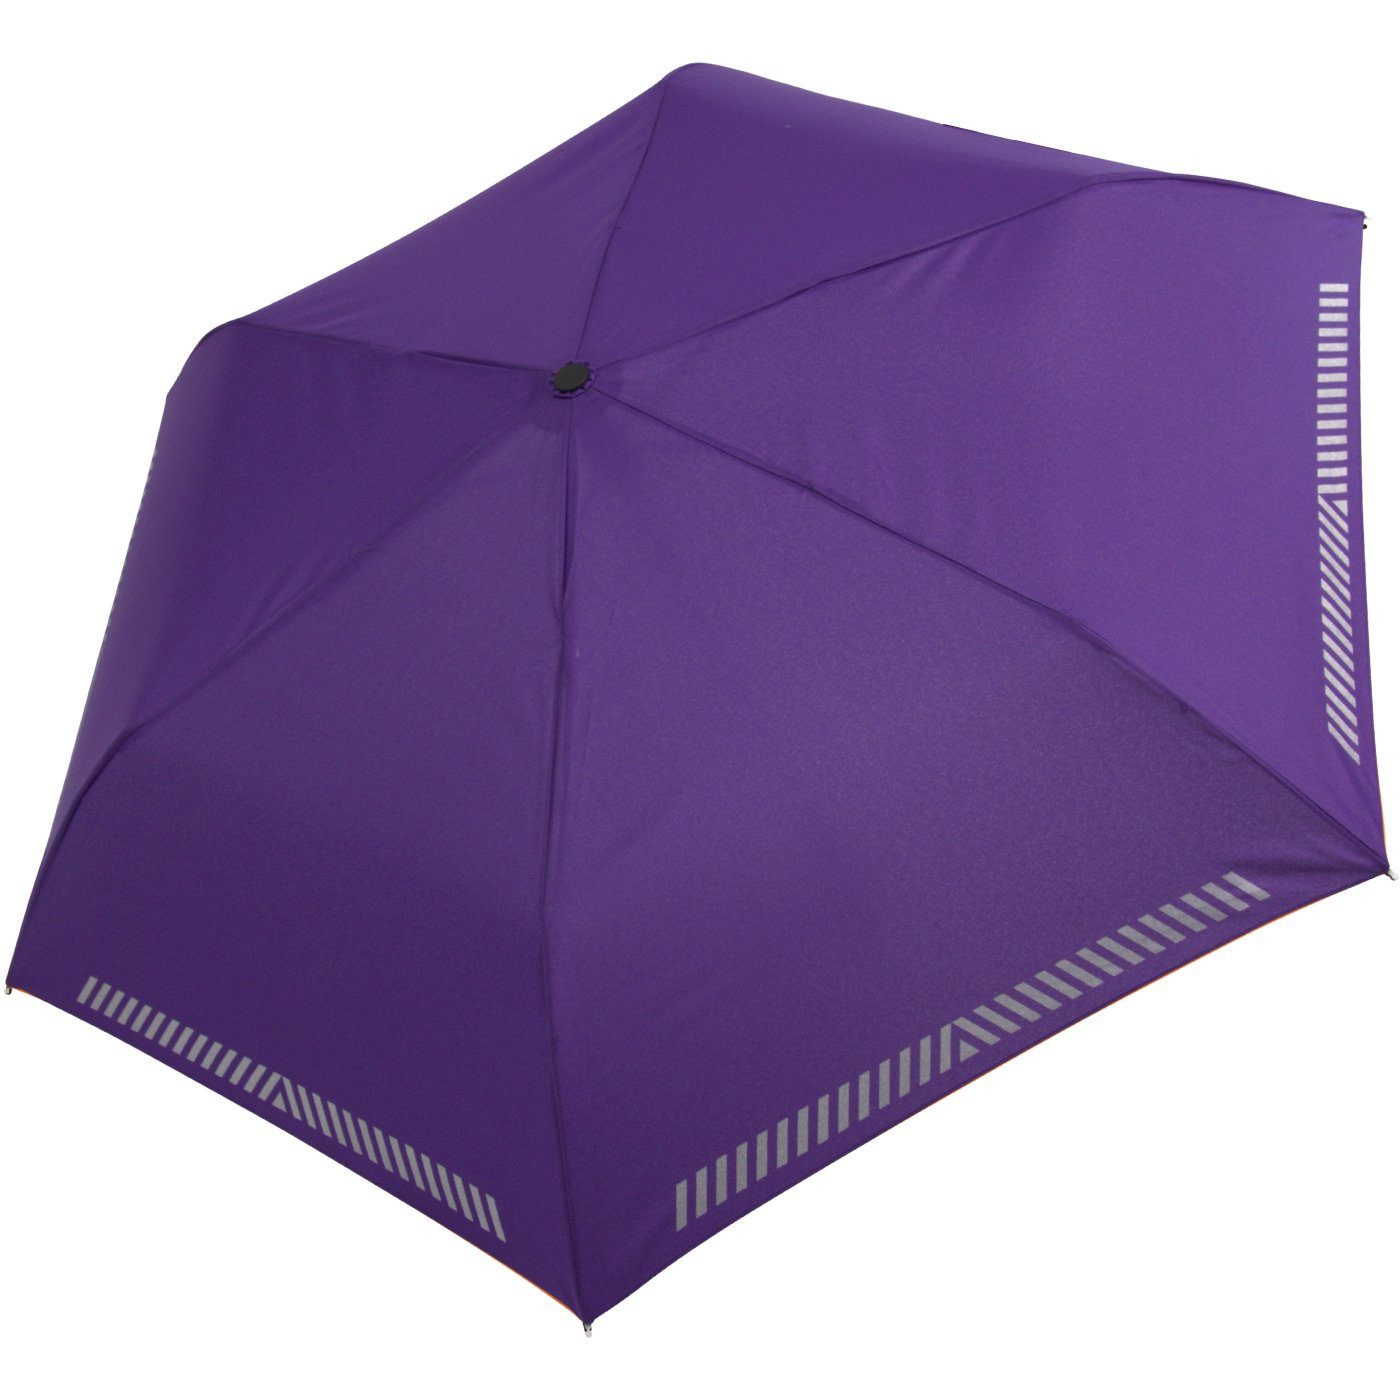 Reflex-Streifen Auf-Zu-Automatik, iX-brella Taschenregenschirm berry mit reflektierend, Sicherheit Kinderschirm durch -